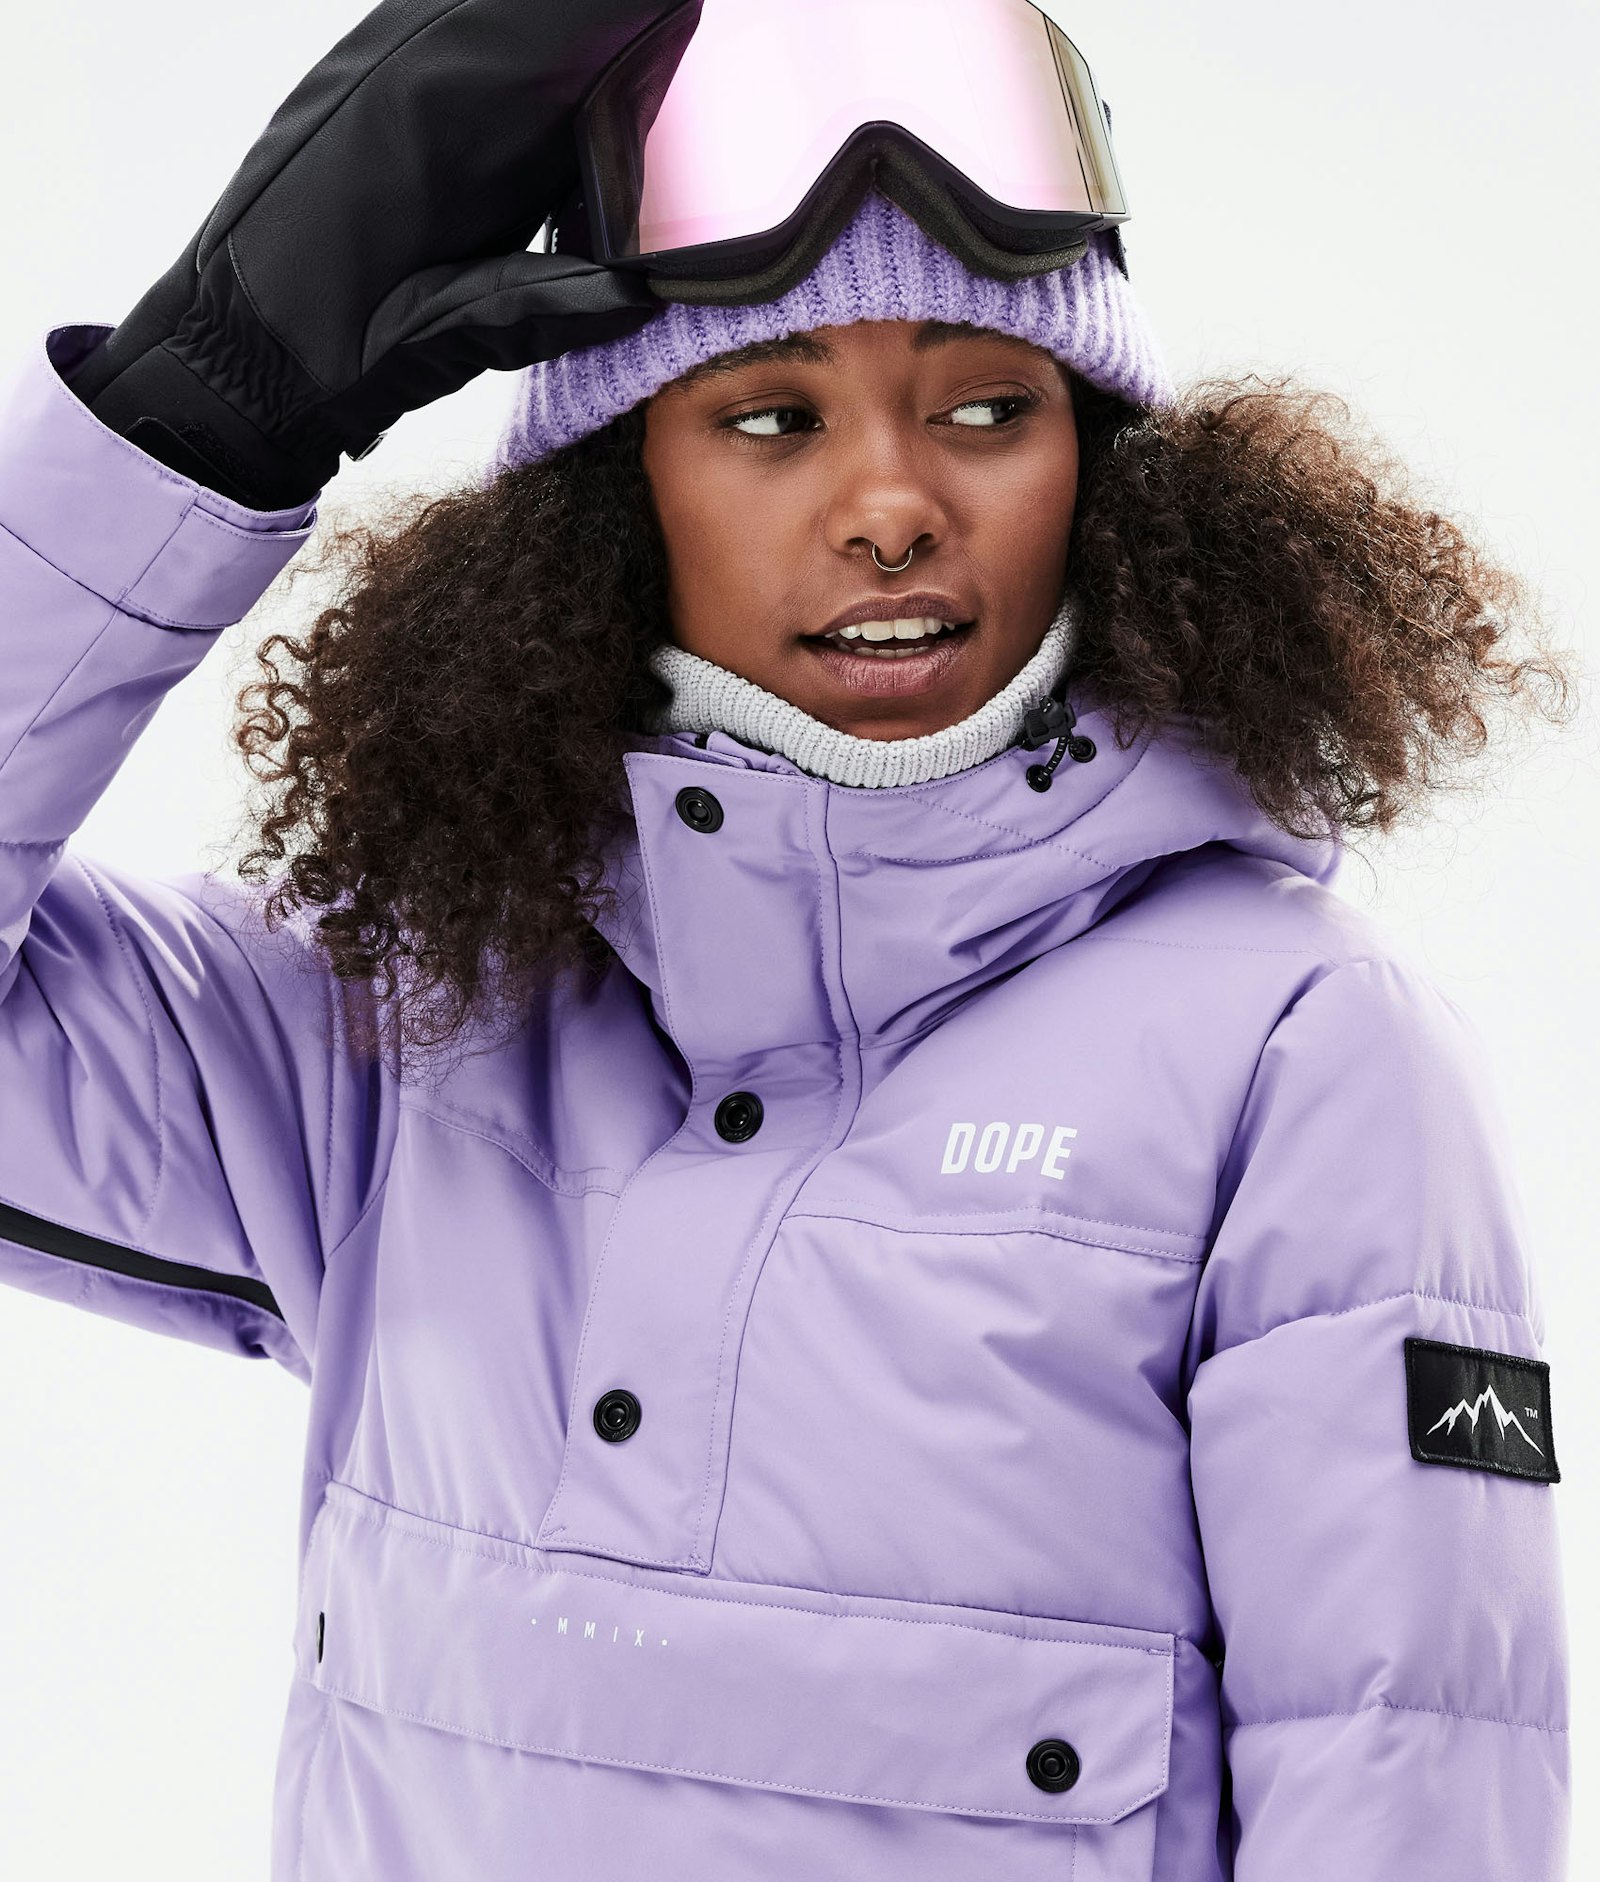 Puffer W 2021 Snowboardjacke Damen Faded Violet